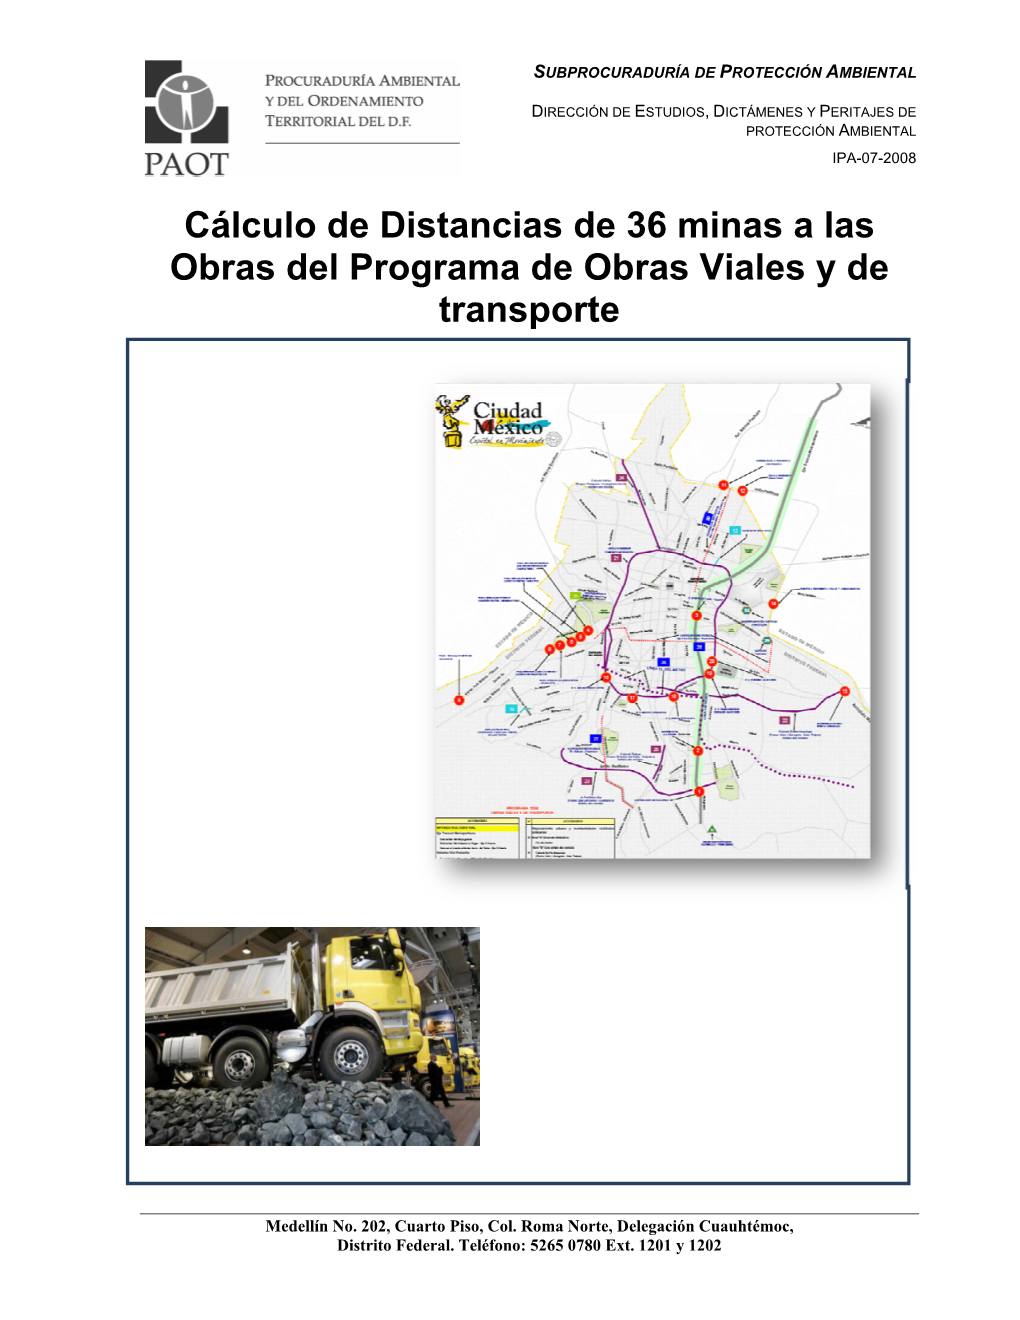 Cálculo De Distancias De 36 Minas a Las Obras Del Programa De Obras Viales Y De Transporte